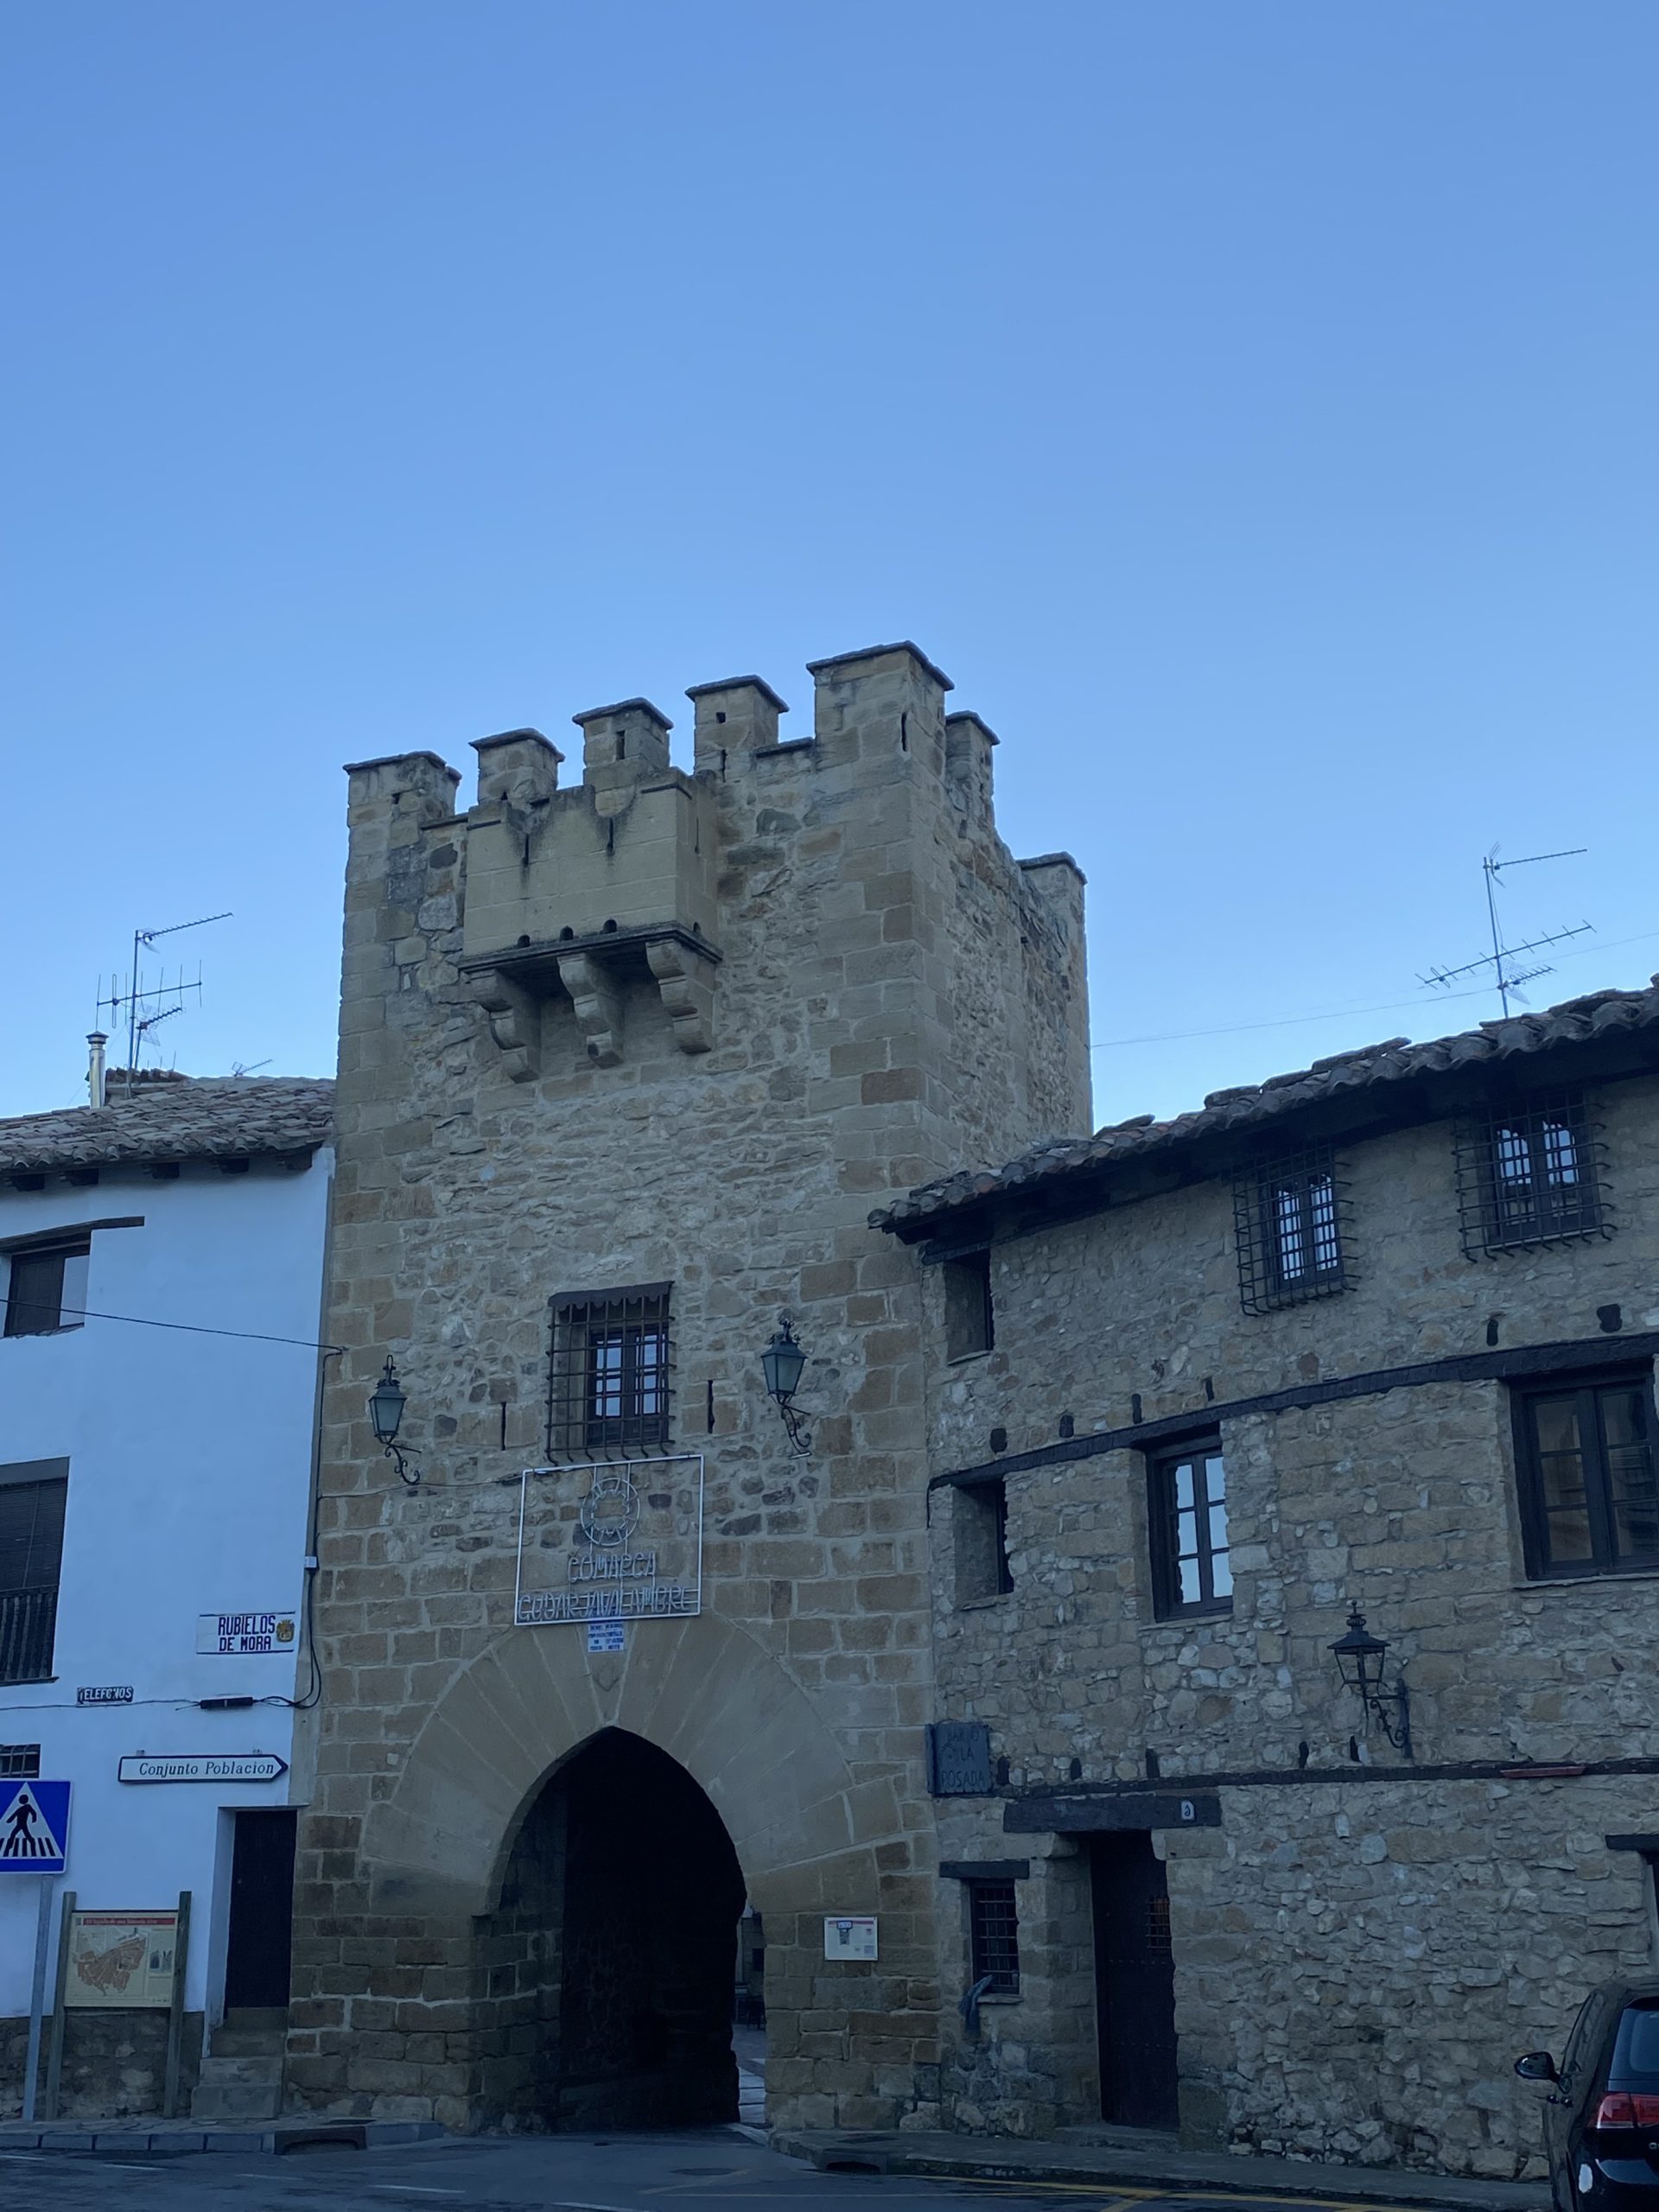 Qué ver en la provincia de Teruel